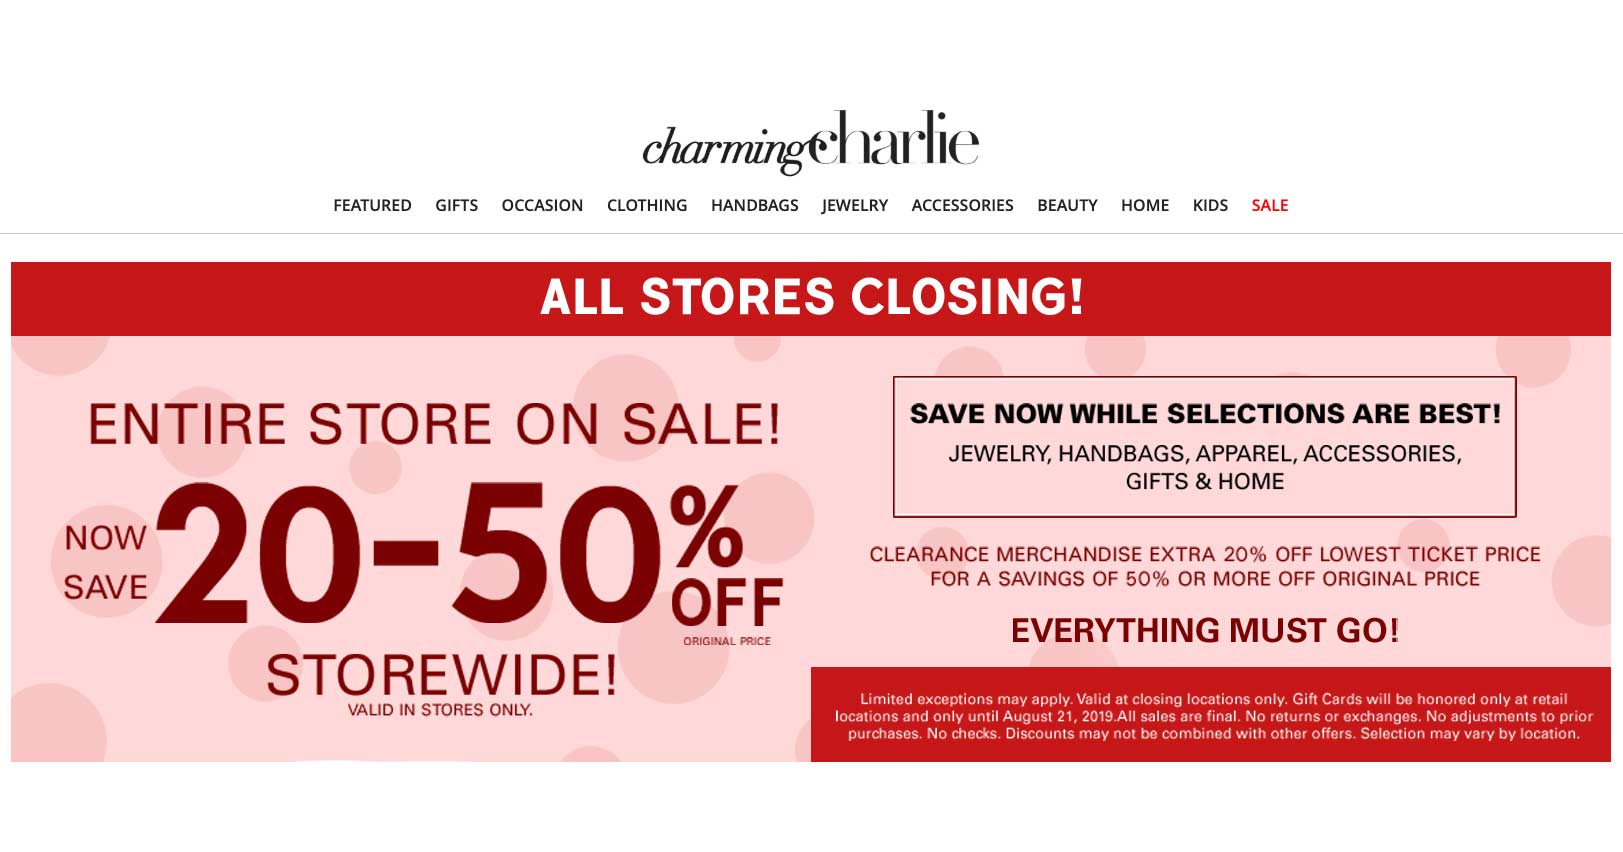 Der Webshop von Charming Charlie weist auf die Schließung der Geschäfte hin.